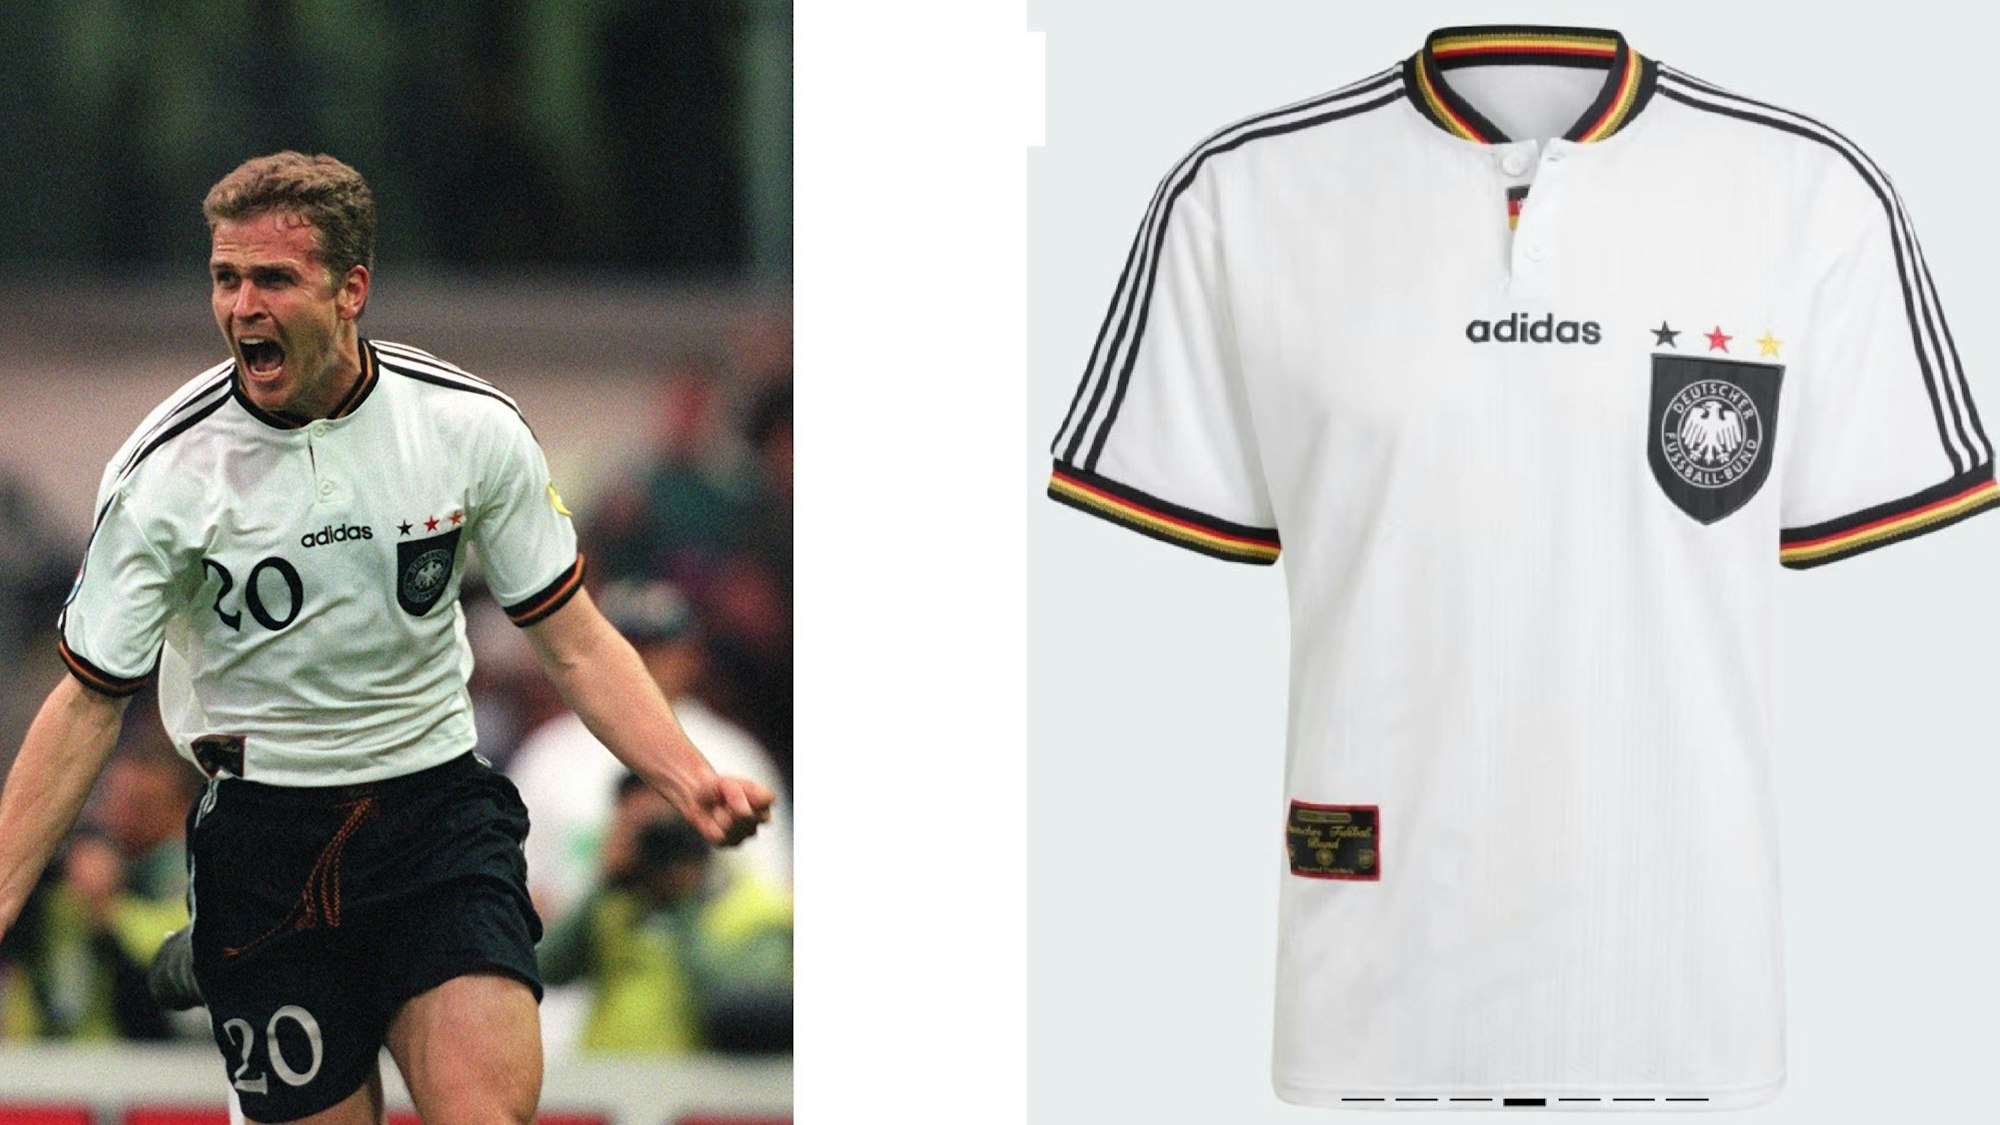 Links Oliver Bierhoff auf dem unvergesslichen Jubel-Foto im EM-Finale 1996. Rechts das neu aufgelete Europameister-Trikot im Adidas-Shop.